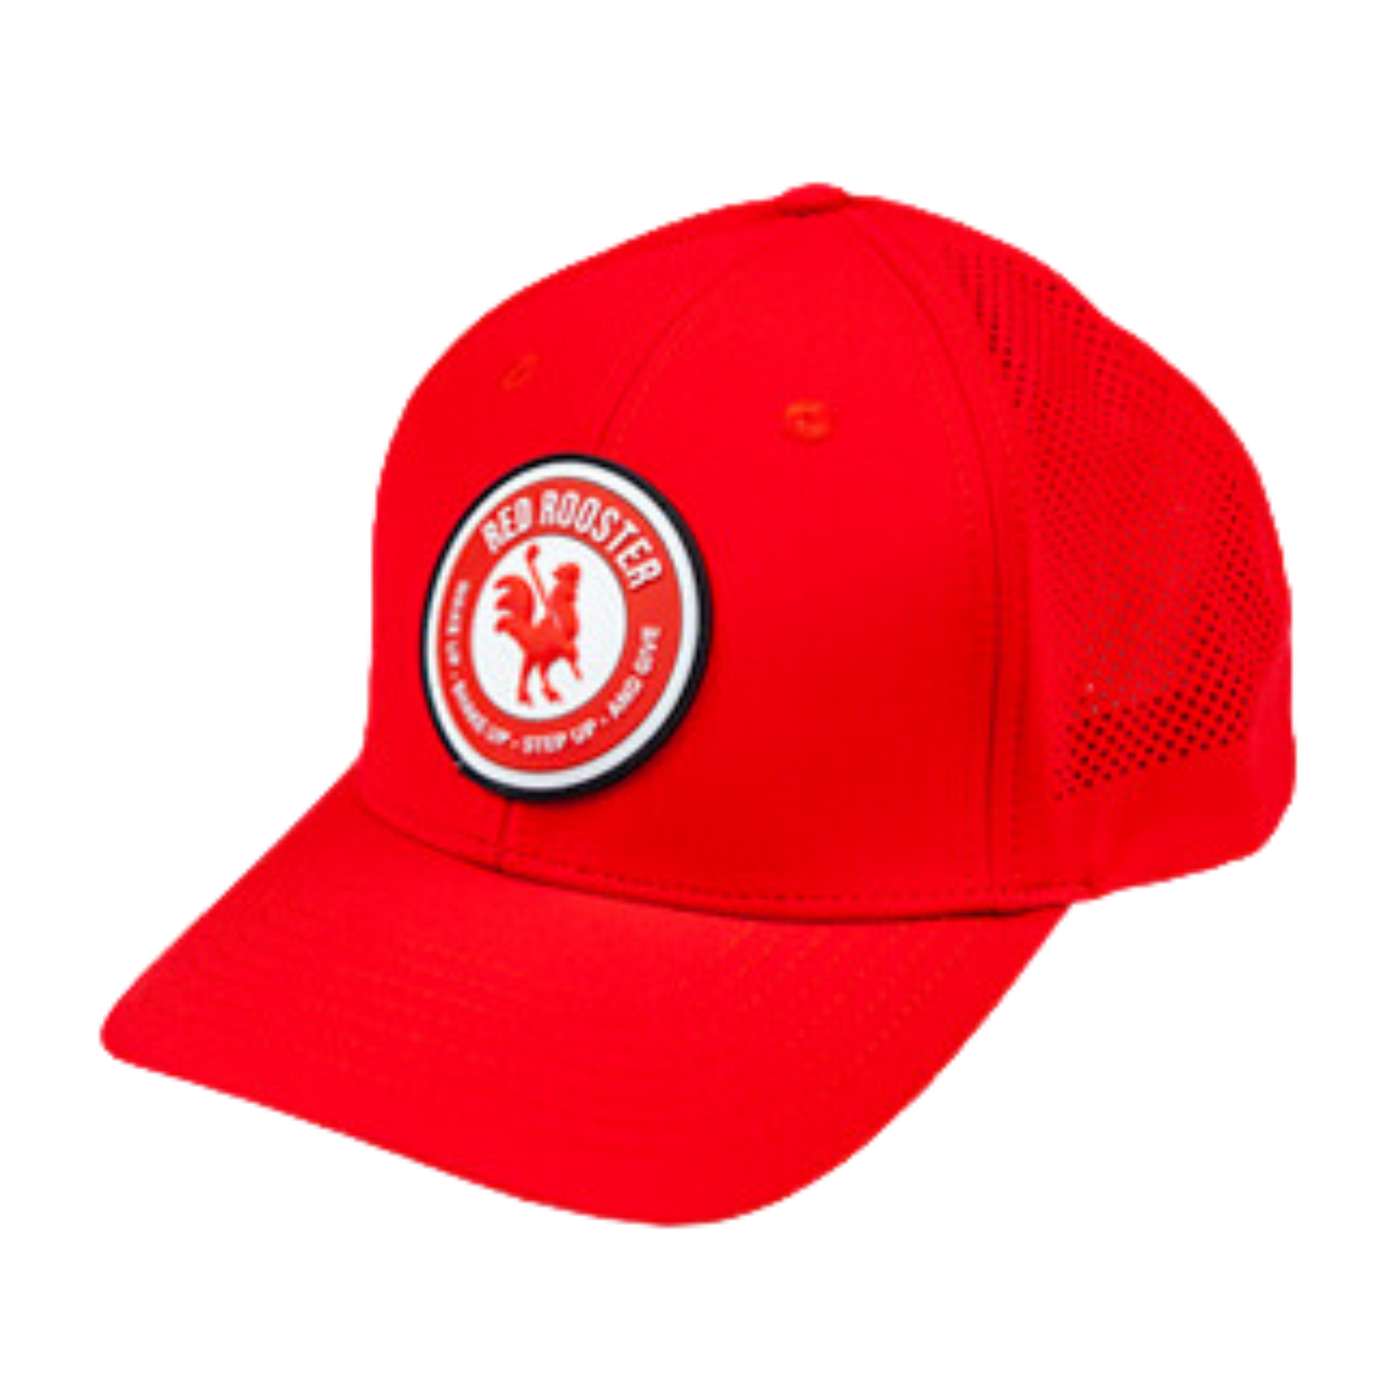 Summit golf hat red